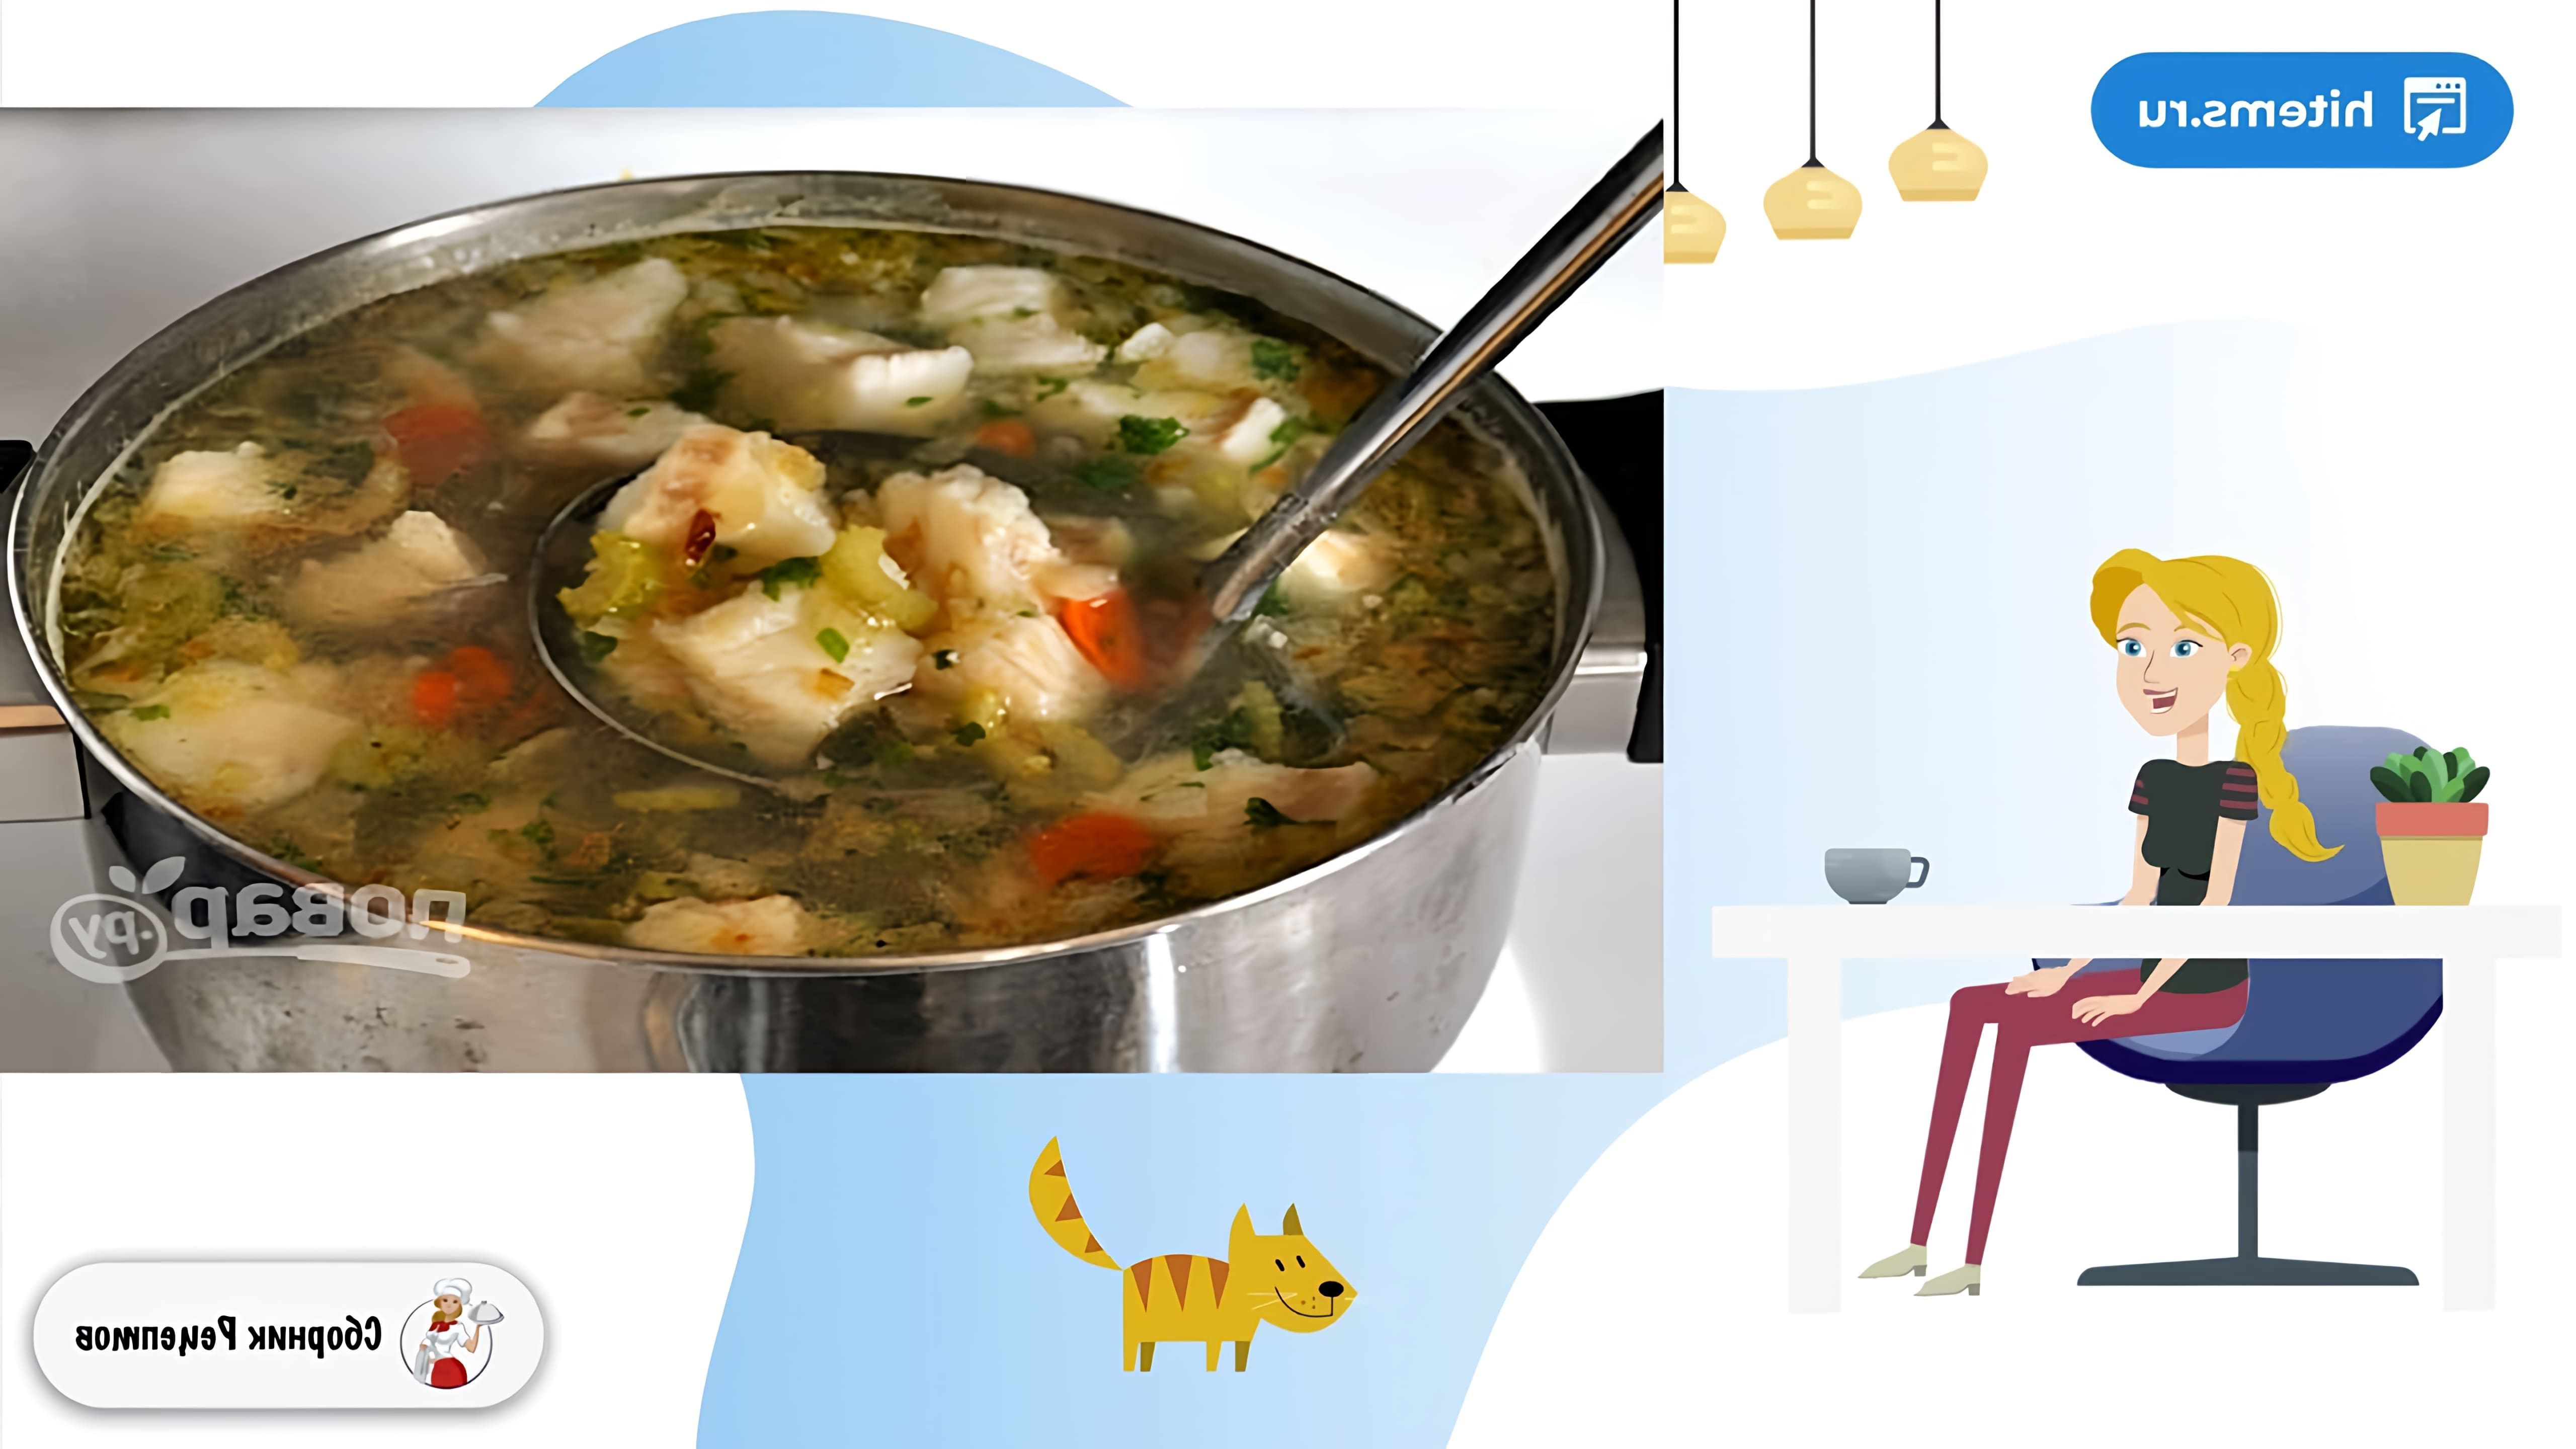 В этом видео демонстрируется рецепт приготовления диетического рыбного супа из трески с овощами